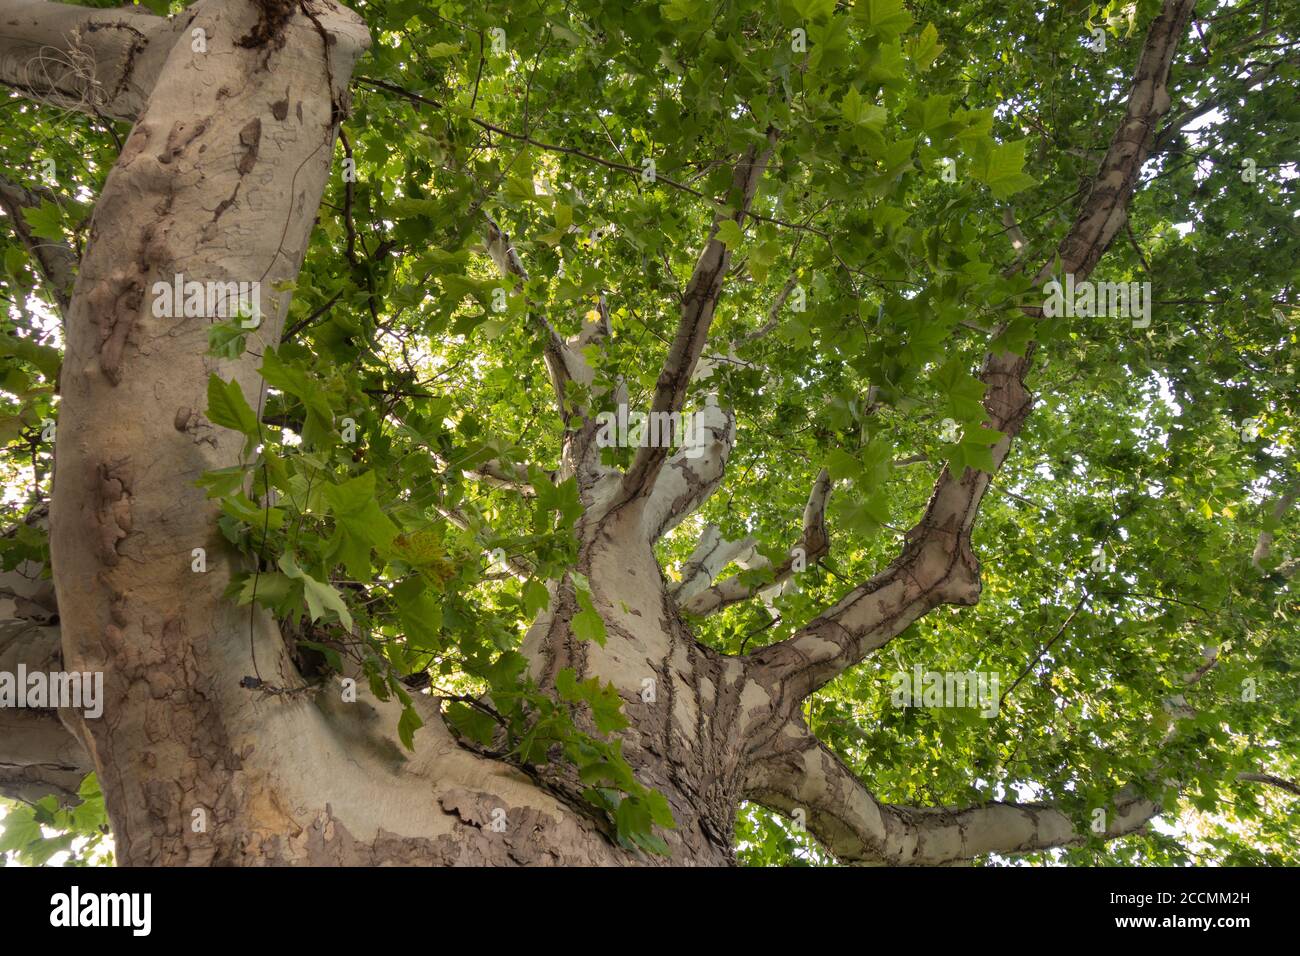 Sycamore. Corona di un albero secolare sul viale della città, vista dal basso. Foto Stock